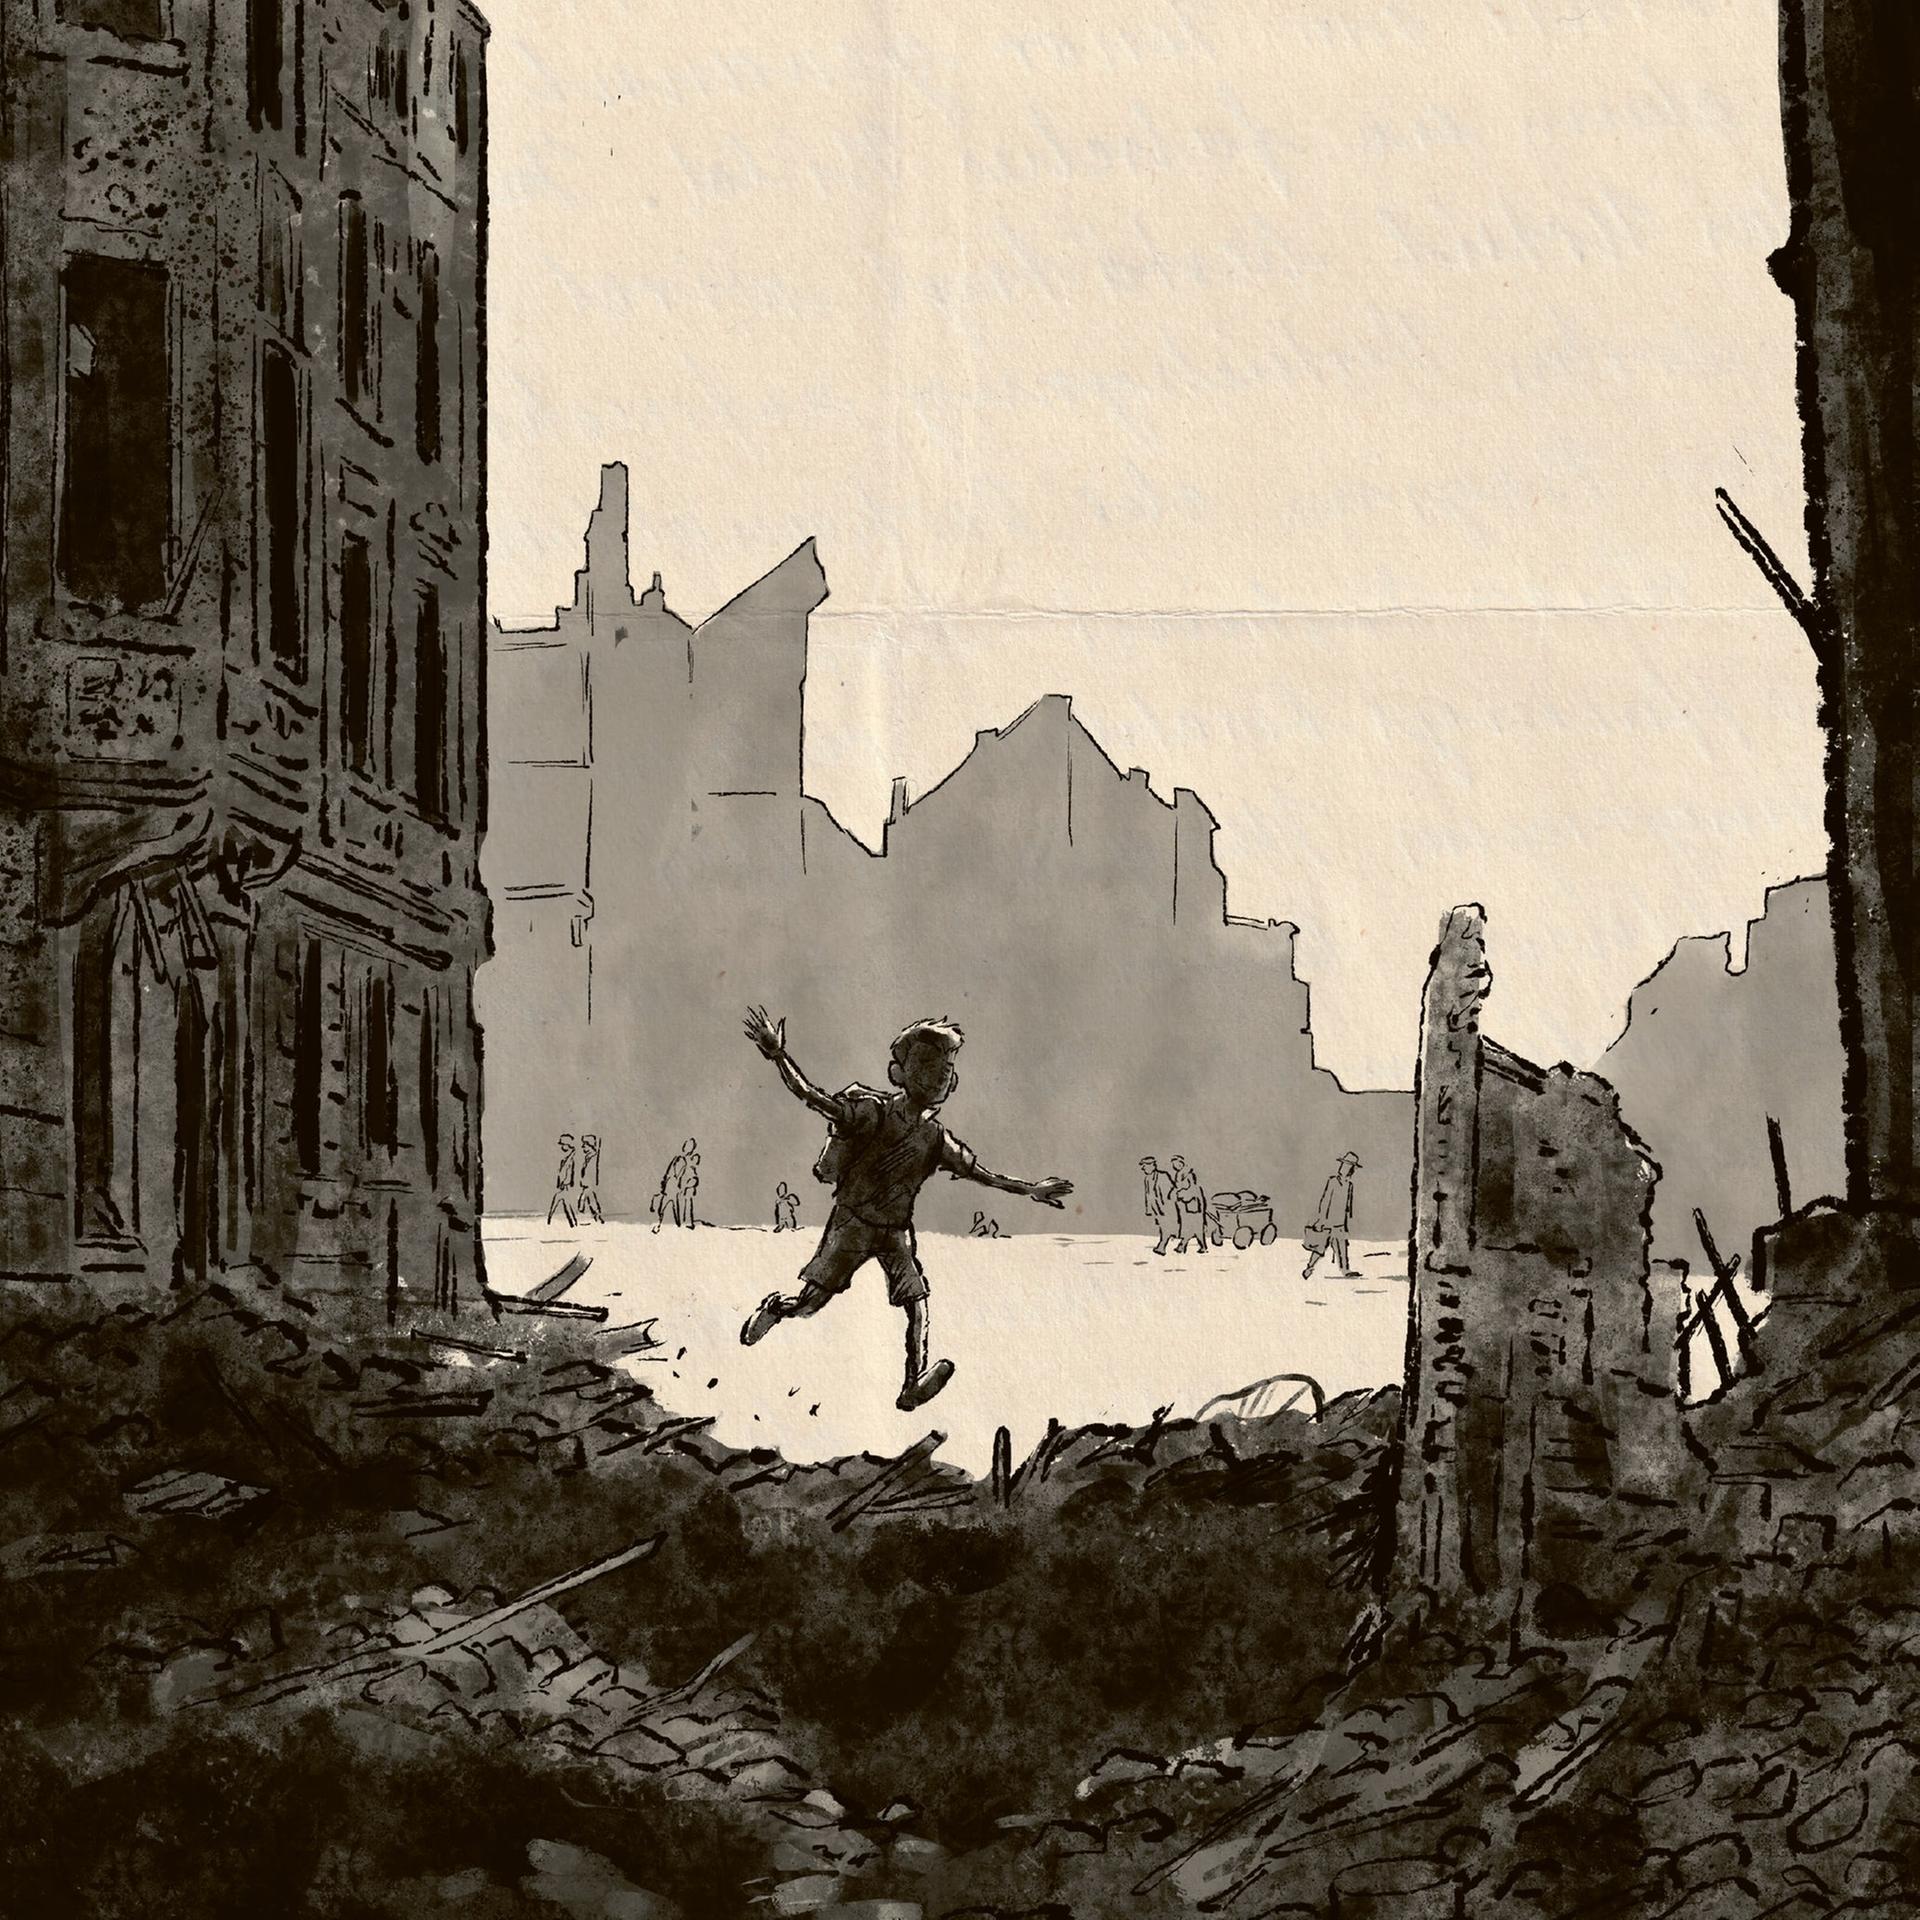 Comiczeichnung eines Kindes, das zwischen Ruinen läuft. Ausschnitt des Buchcovers "Columbusstraße. Eine Familiengeschichte" von Tobi Dahmen, Carlsen Verlag.